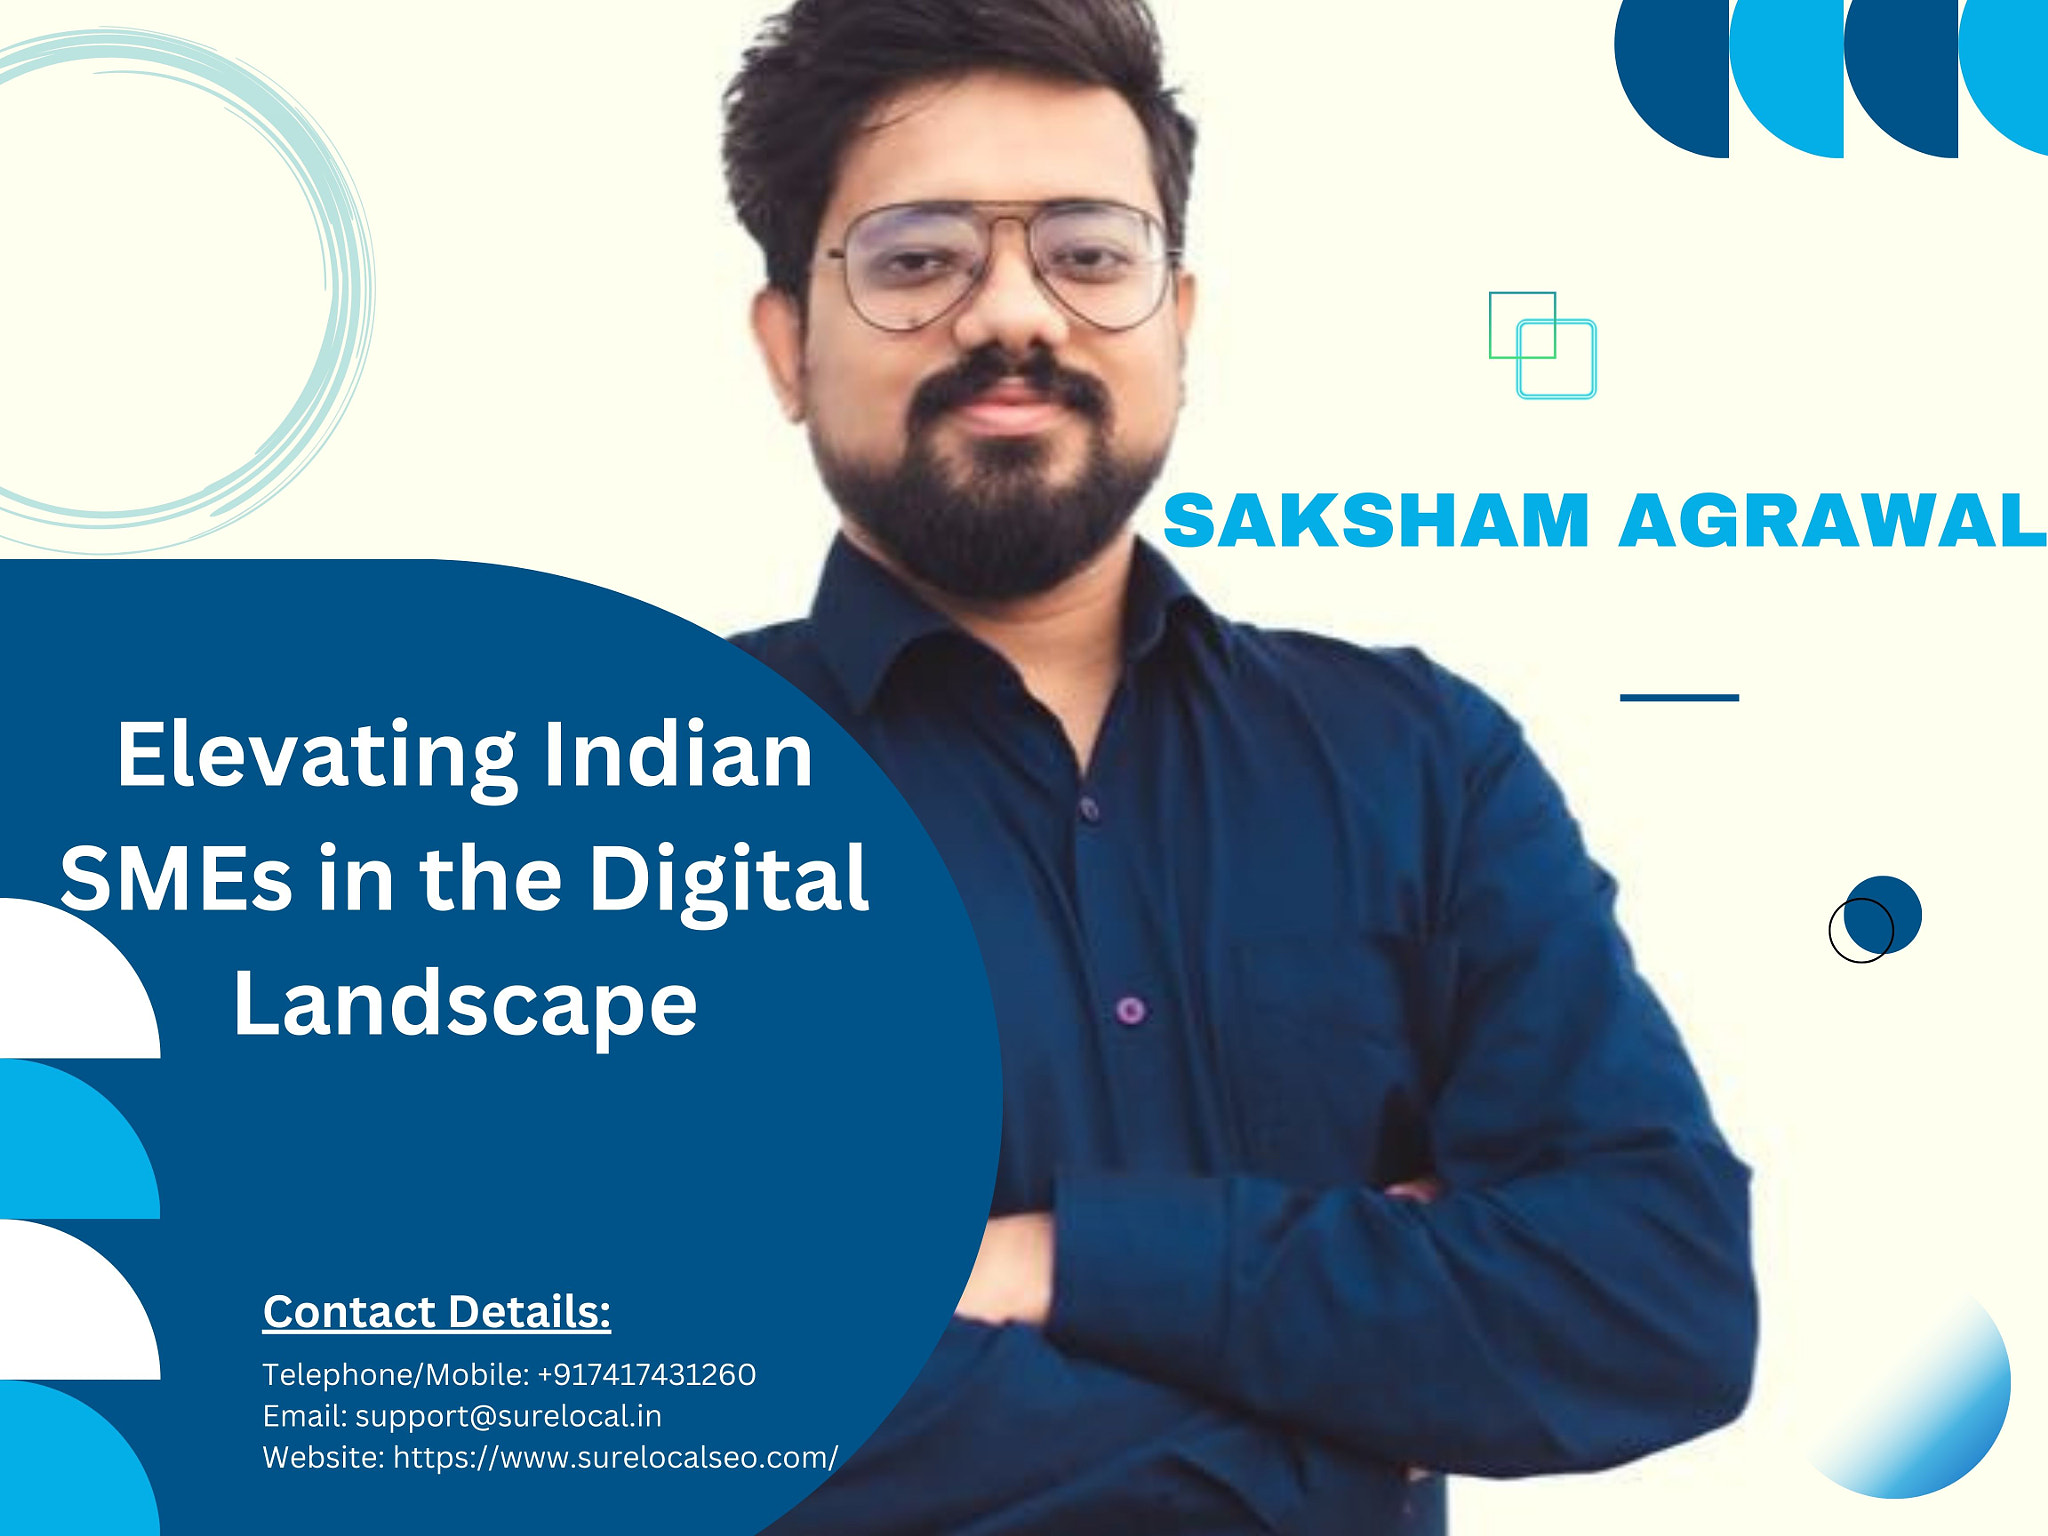 Saksham Agrawal : Elevating Indian SMEs in the Digital Landscape